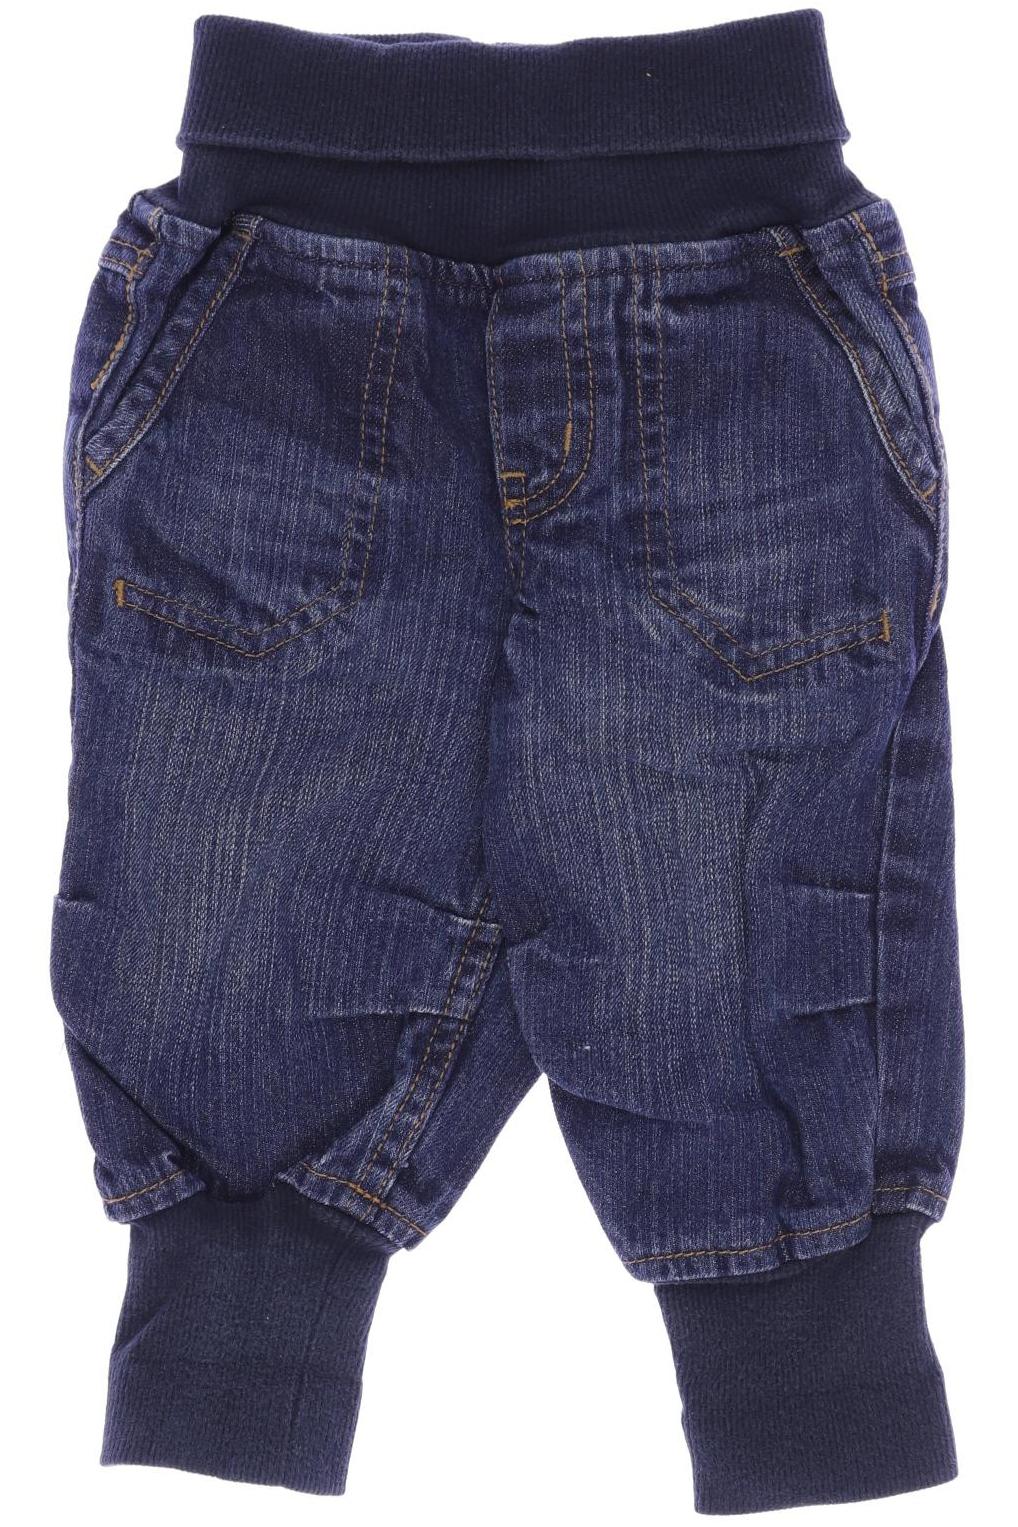 H&M Jungen Jeans, marineblau von H&M